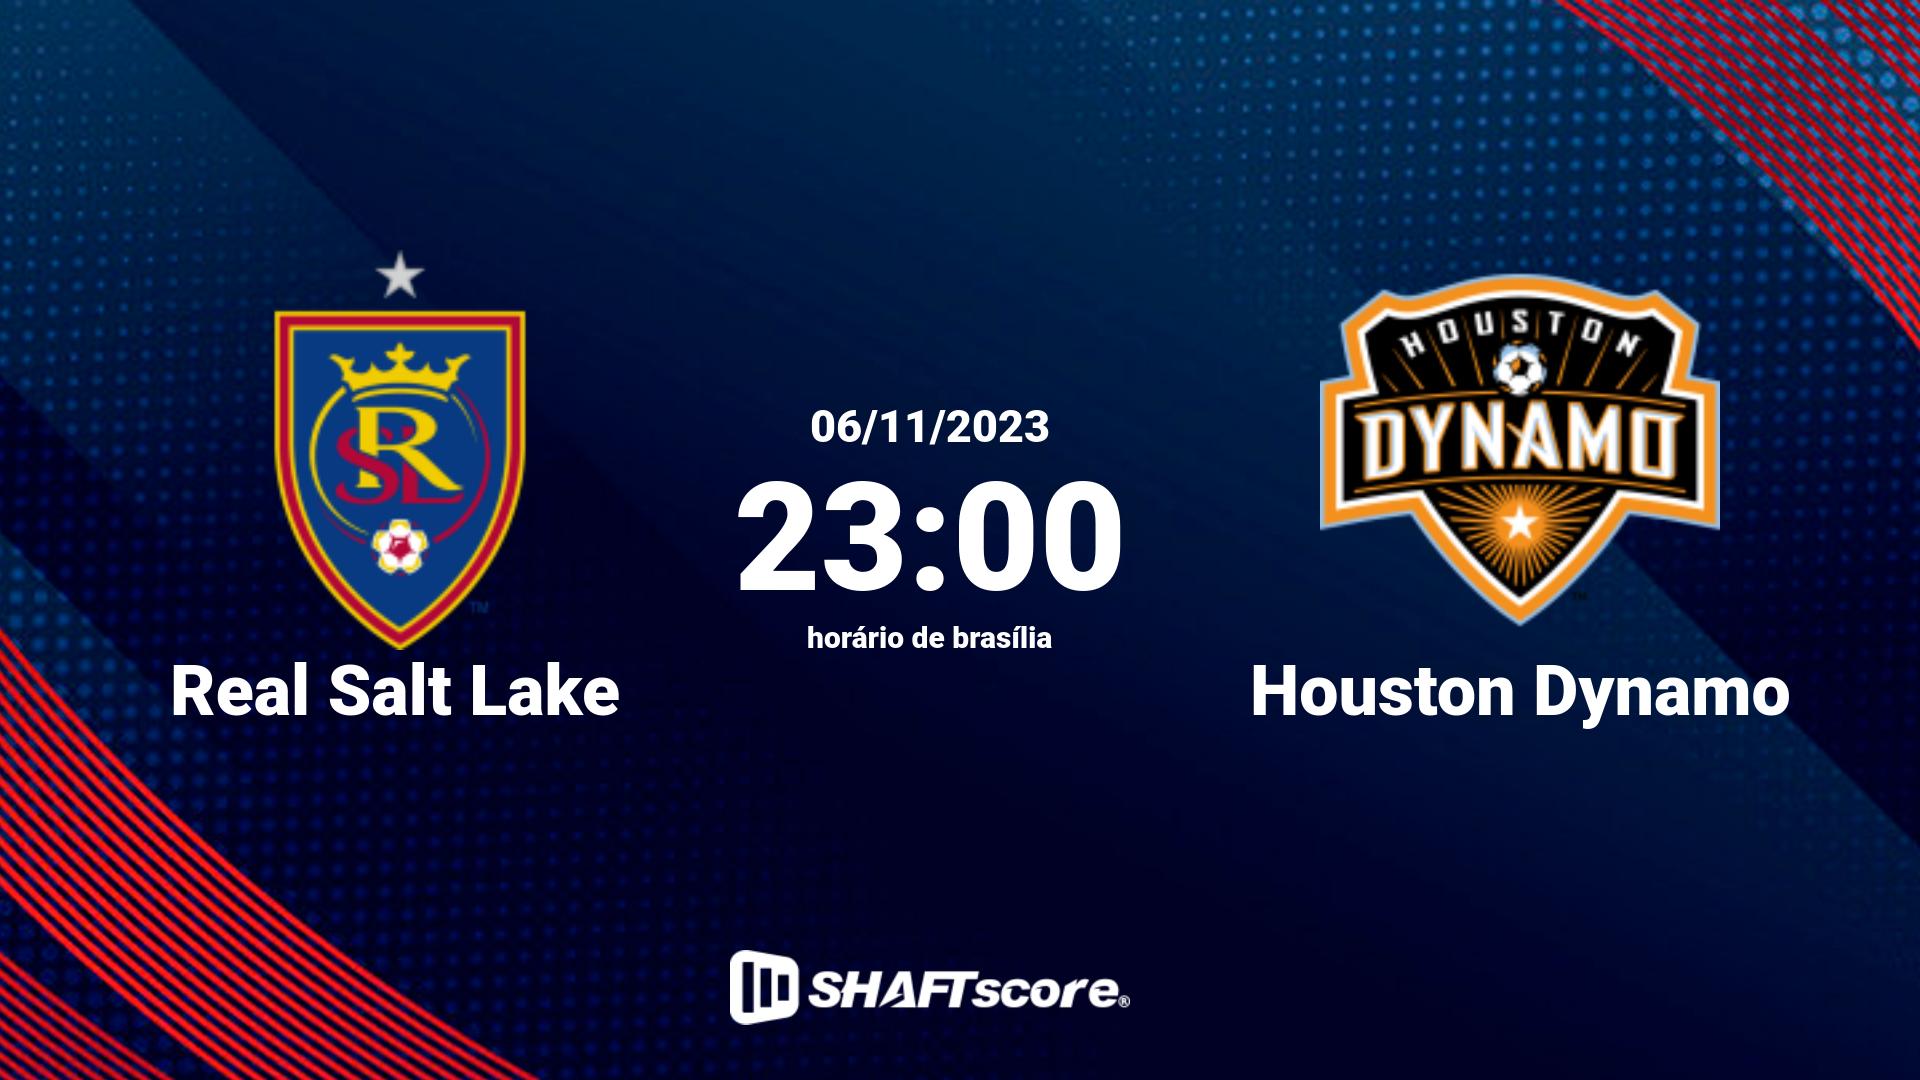 Estatísticas do jogo Real Salt Lake vs Houston Dynamo 06.11 23:00